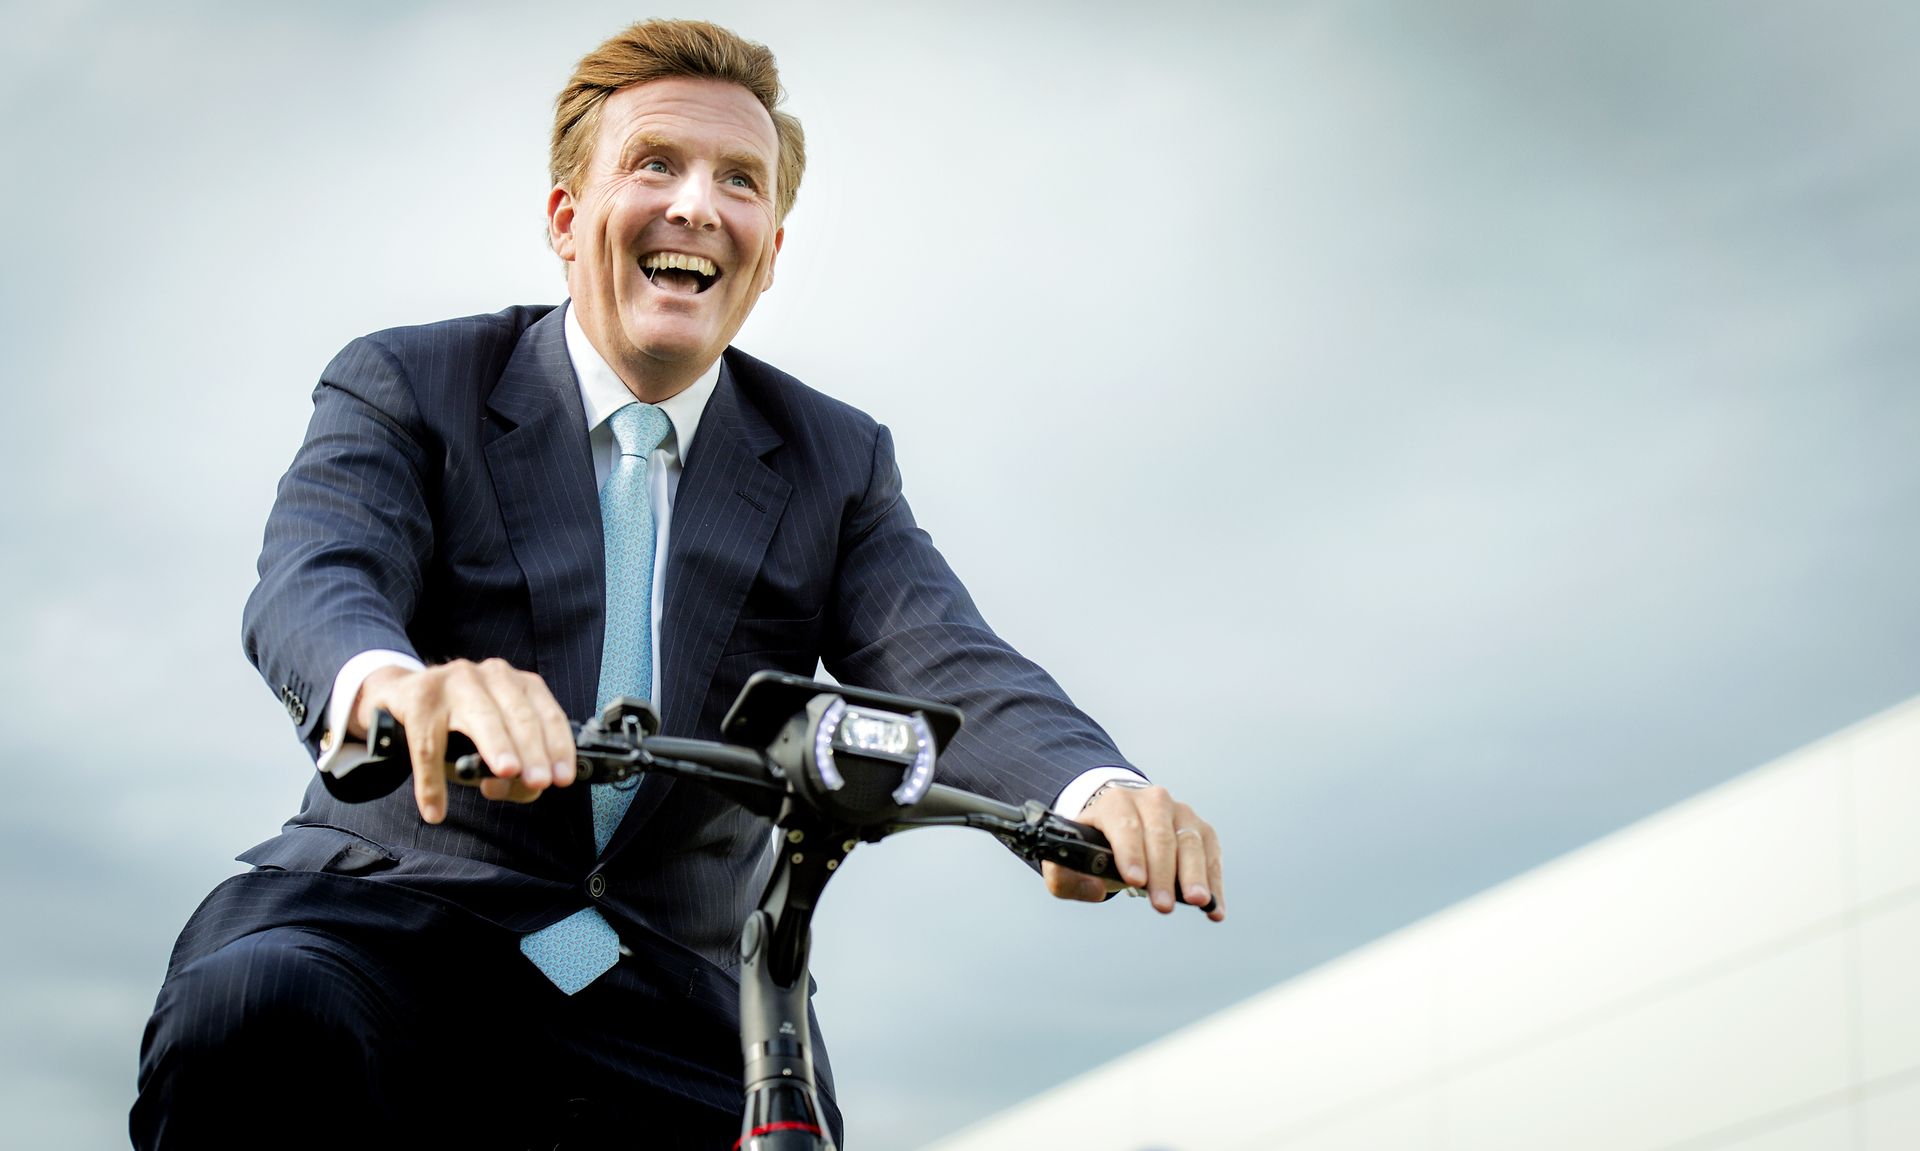 De koning fietst voor deze gelegenheid op een e-bike, de 'fiets van de toekomst'.